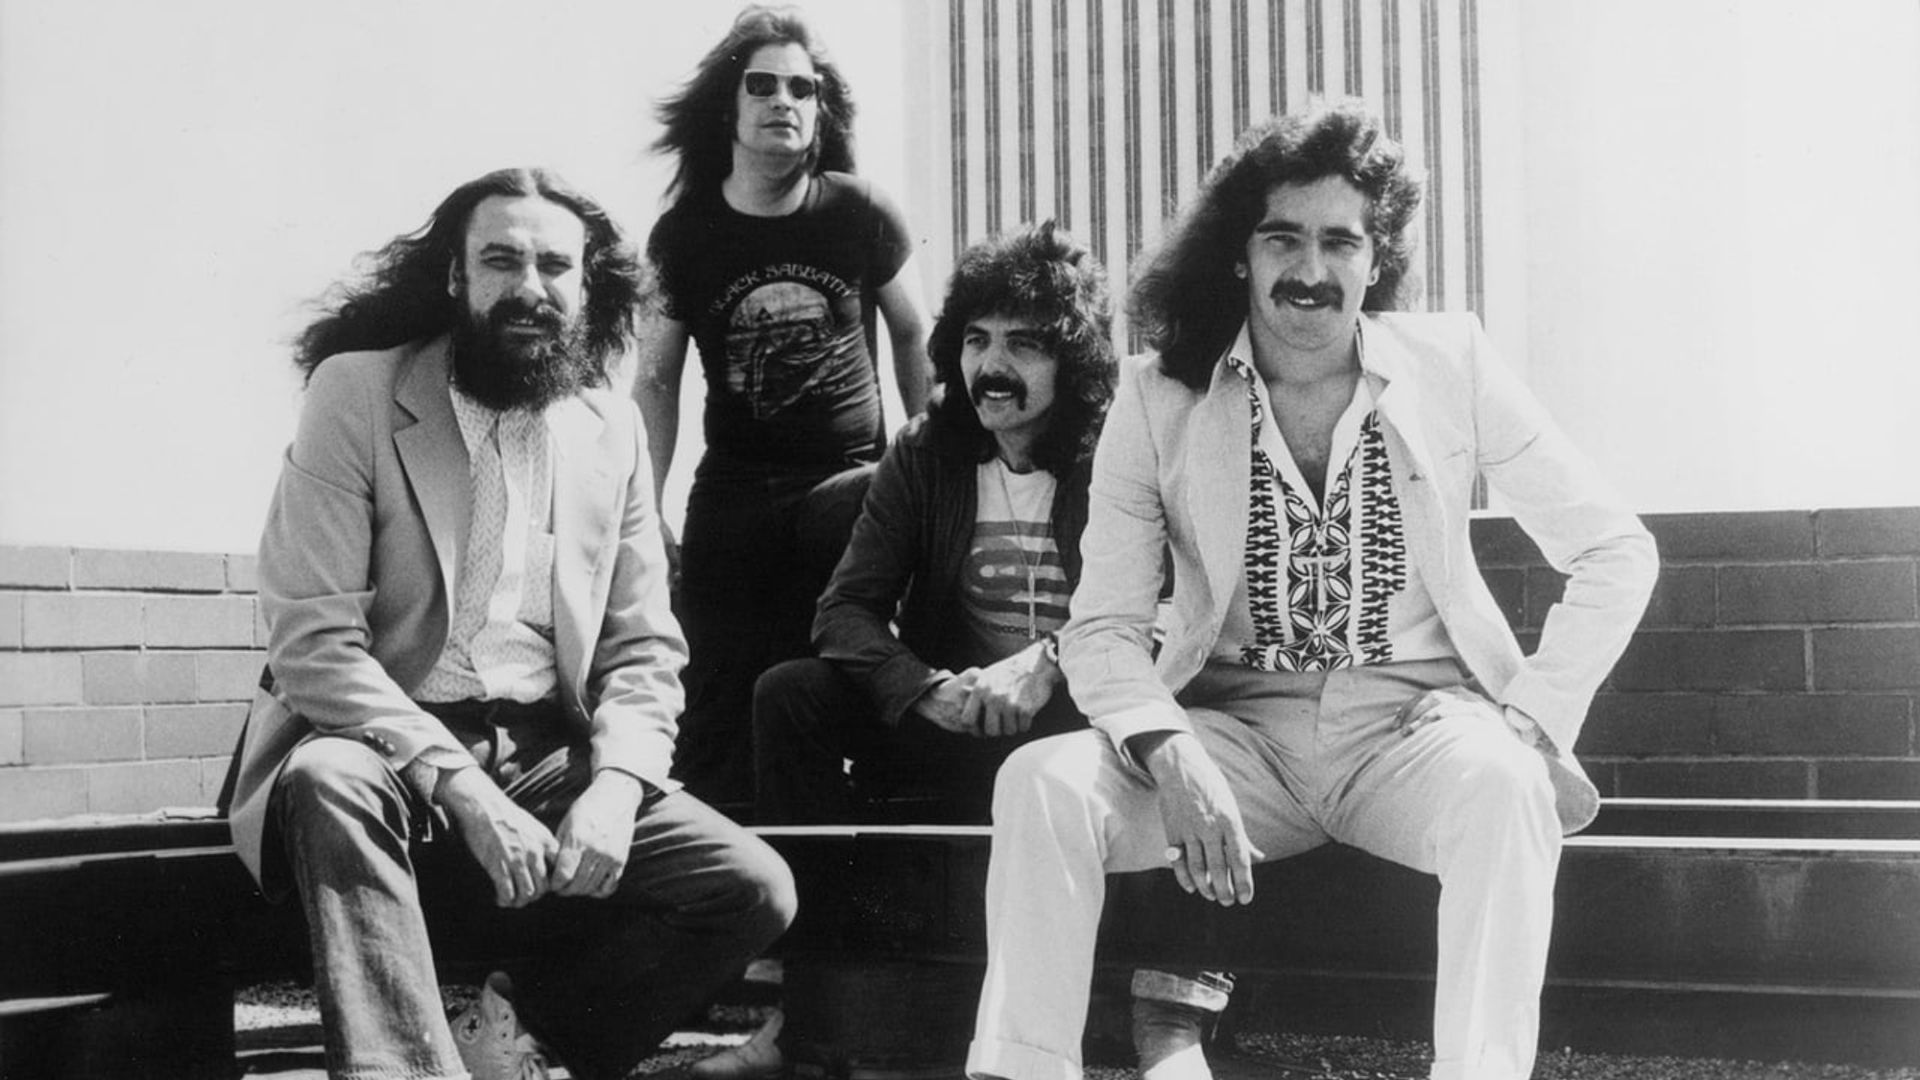 Black Sabbath: Never Say Die background